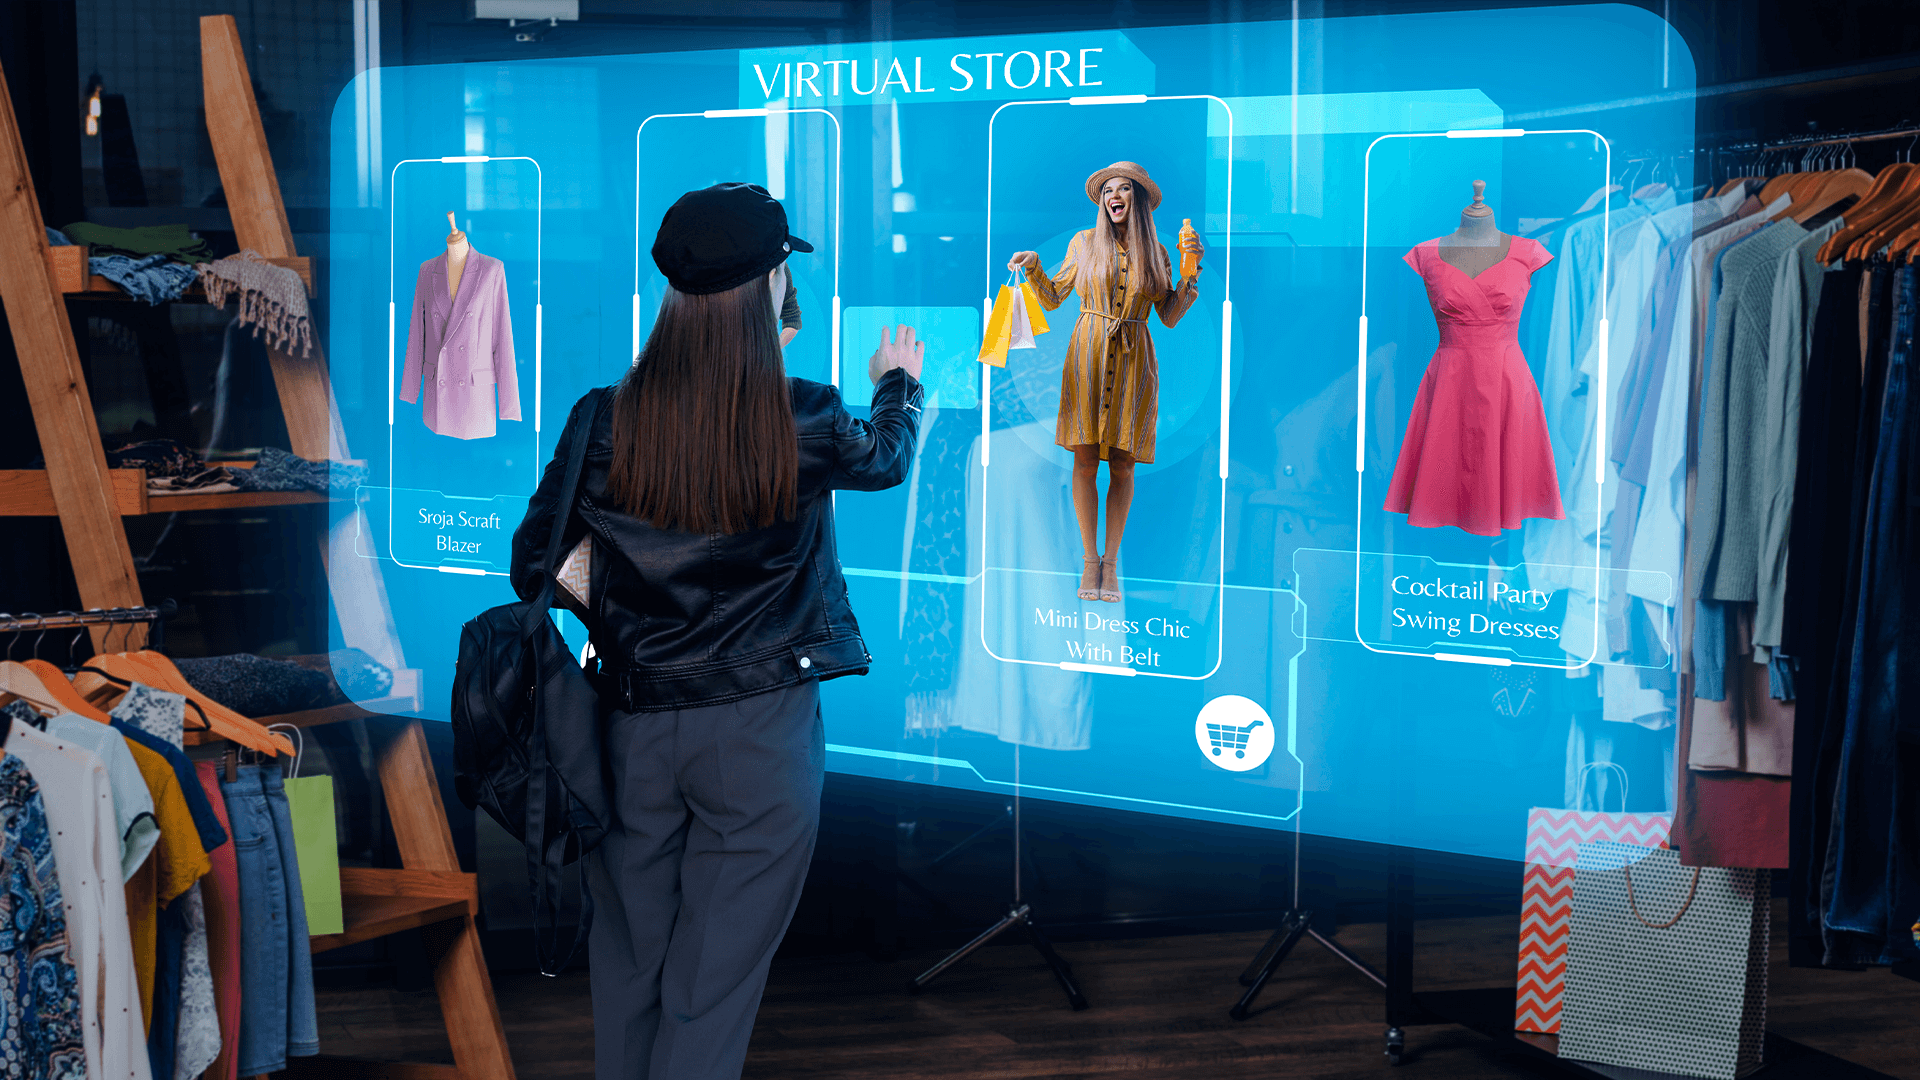 Imagem de uma mulher escolhendo roupas em rv, simbolizando a importância da realidade virtual para vendas.